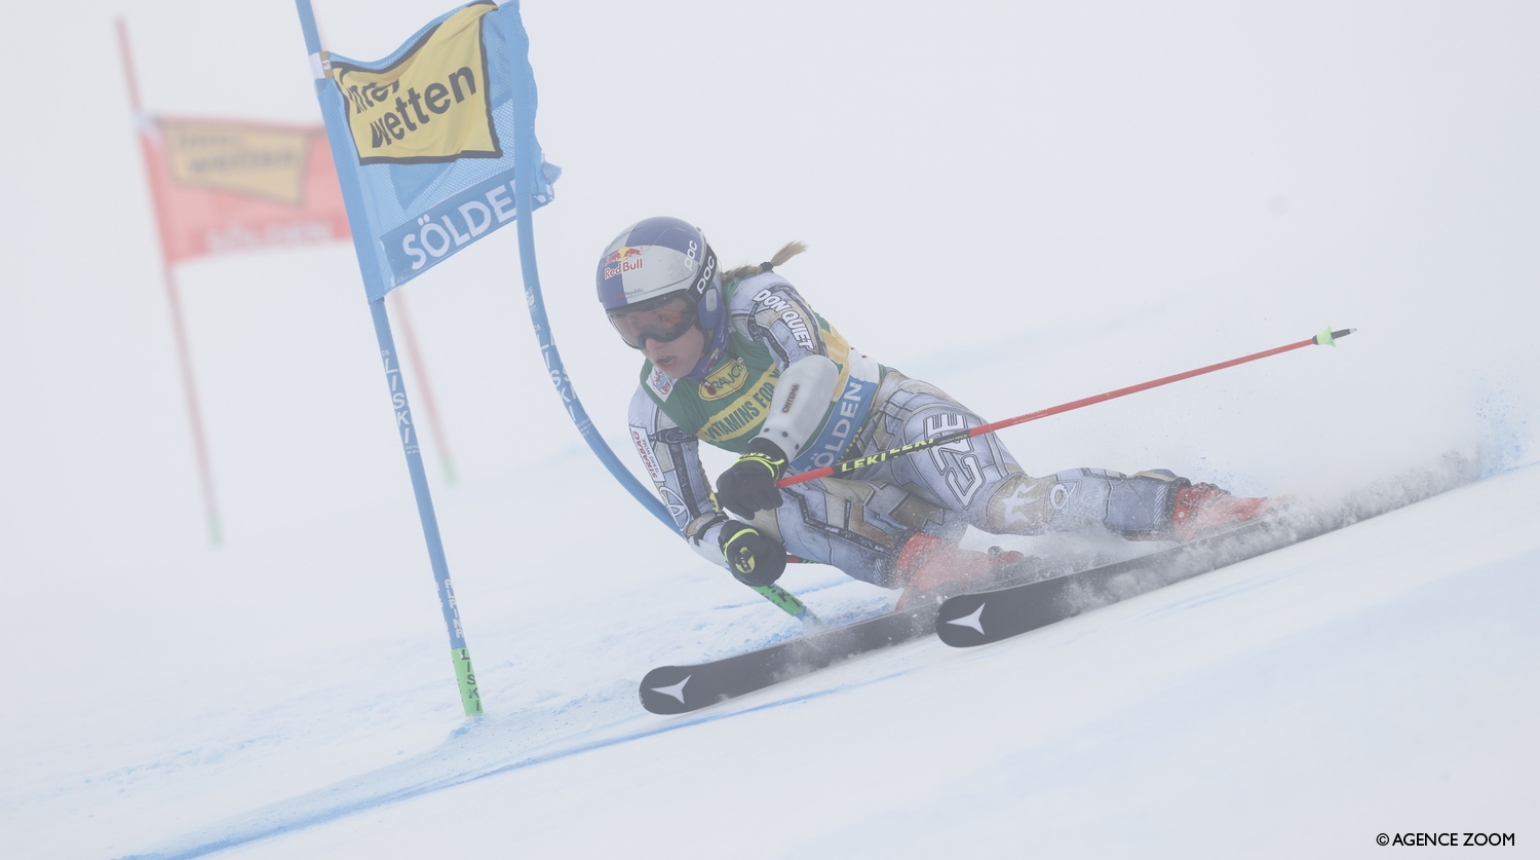 Rychlostní premiéra Ledecké až v neděli a Krýzl musel vybírat lyže na poslední chvíli